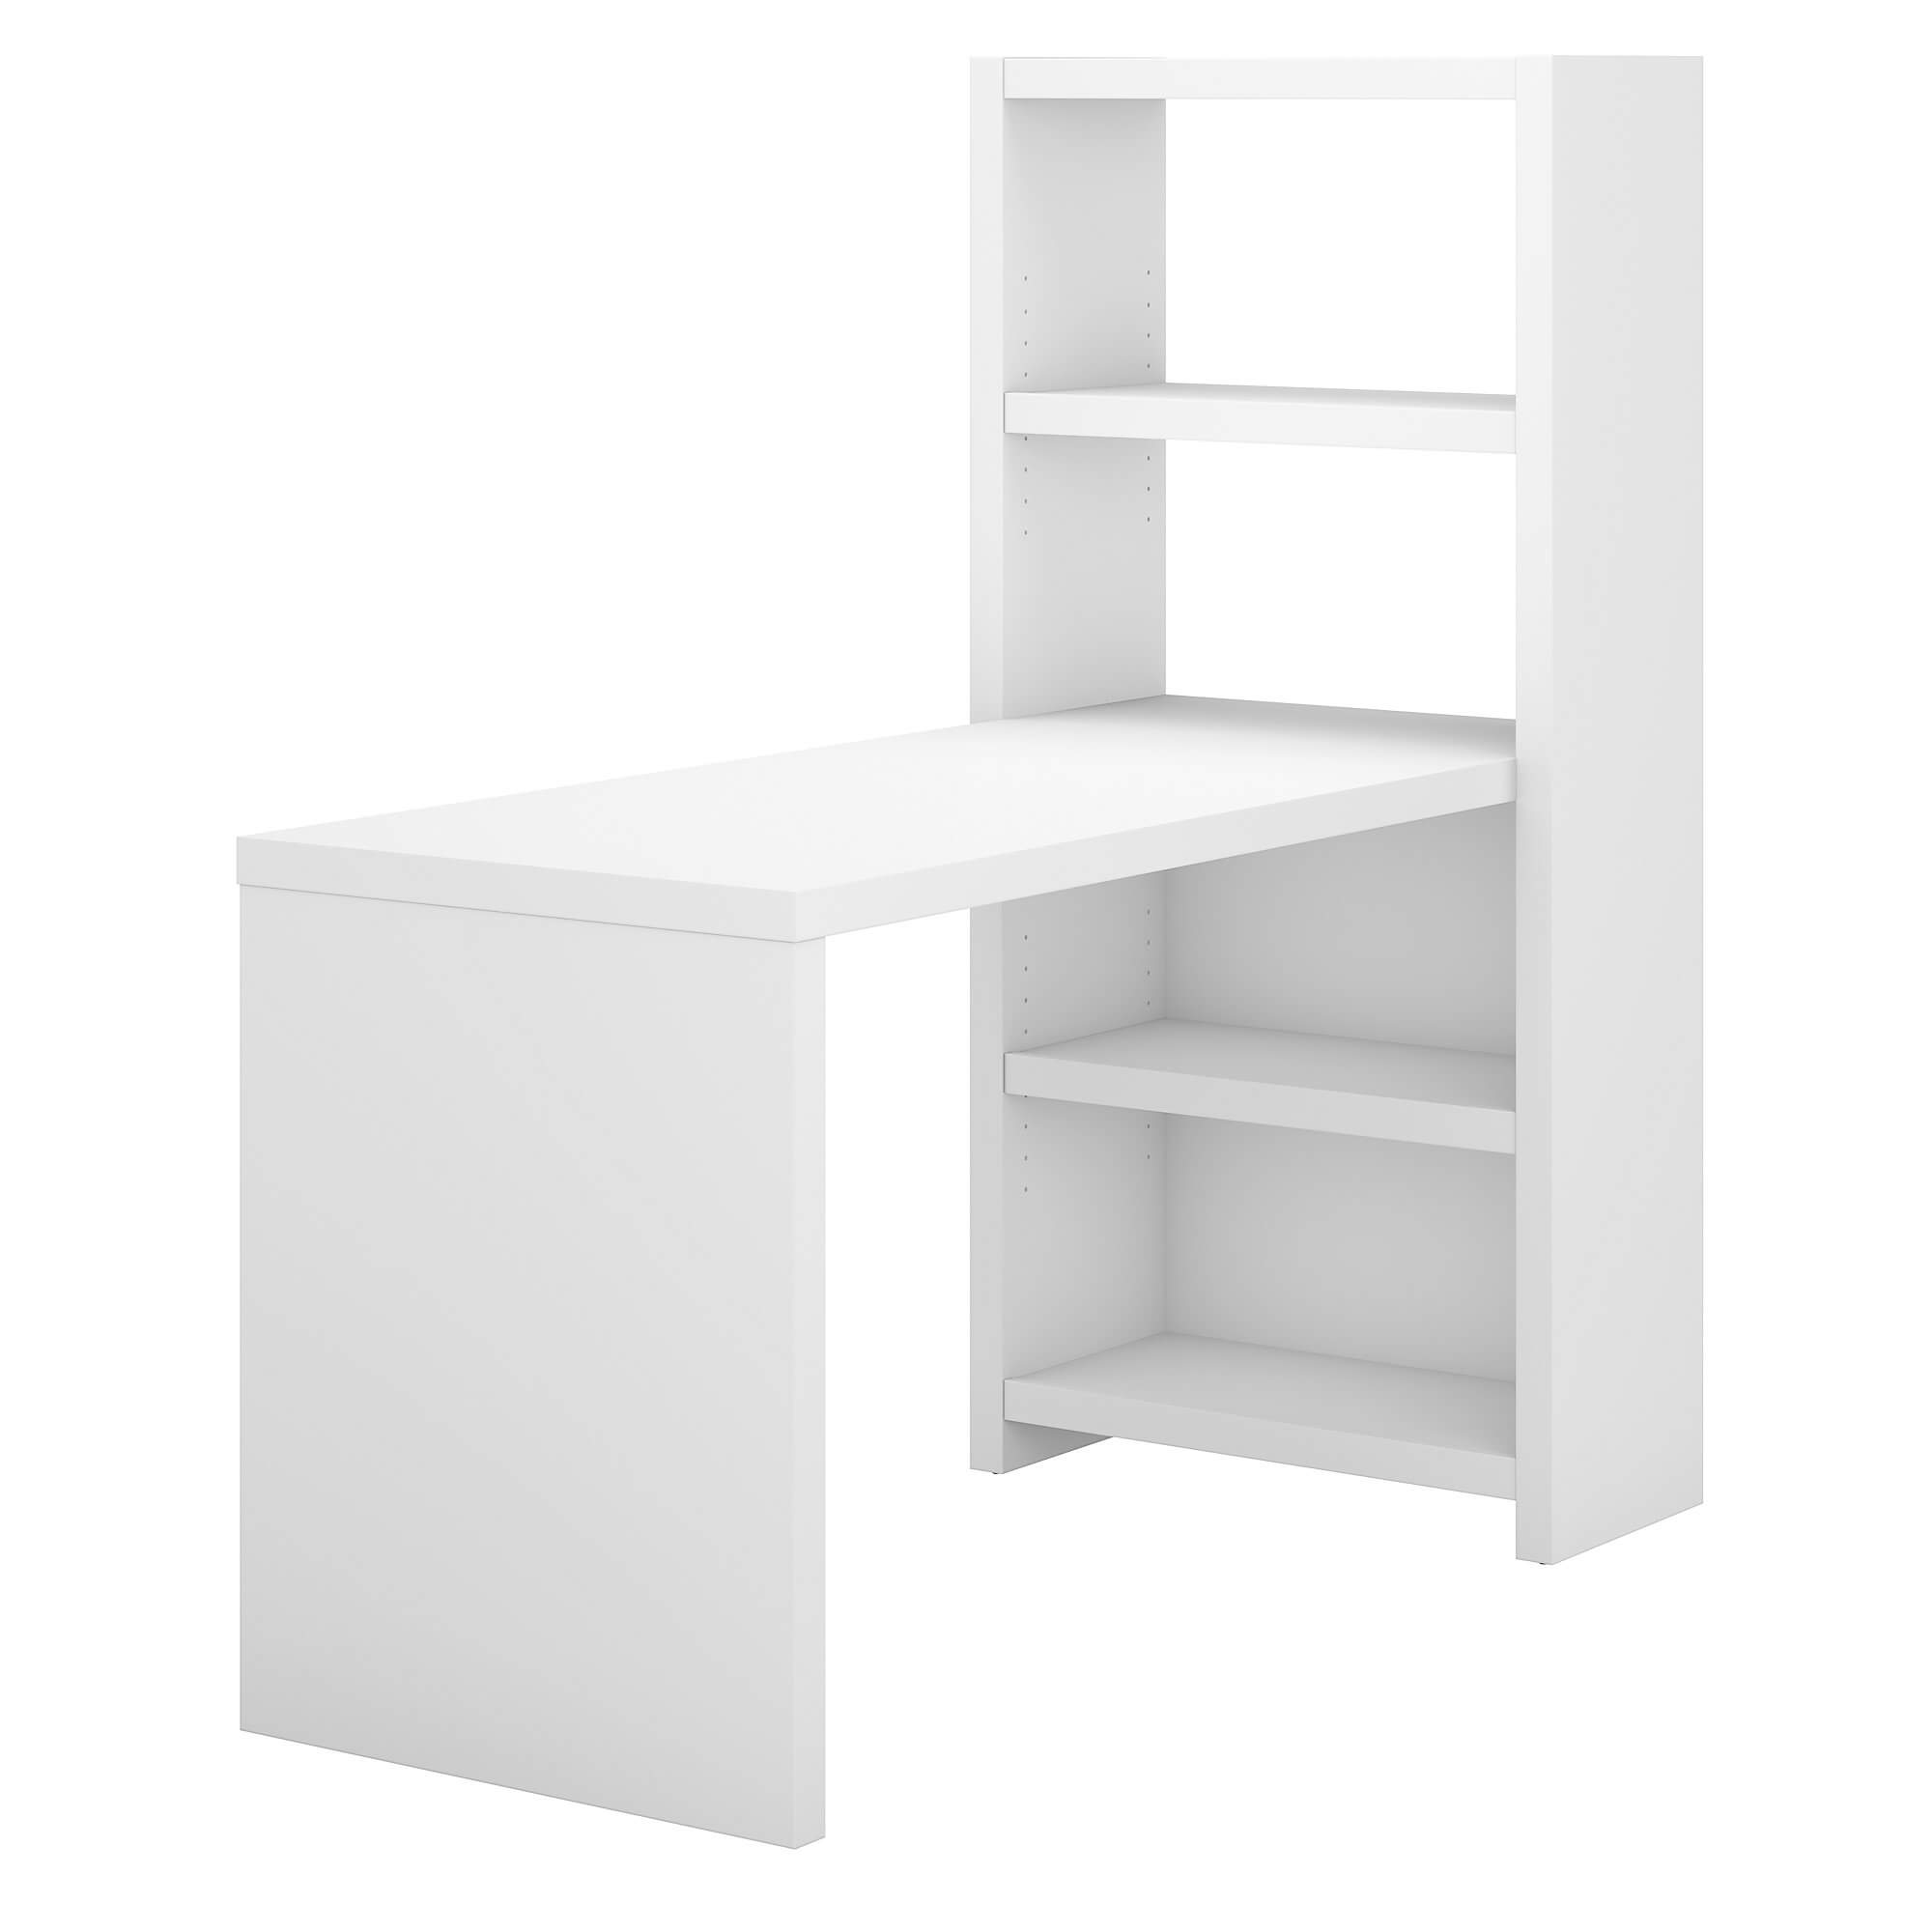 desk-furniture-white-wood-office-desk.jpg